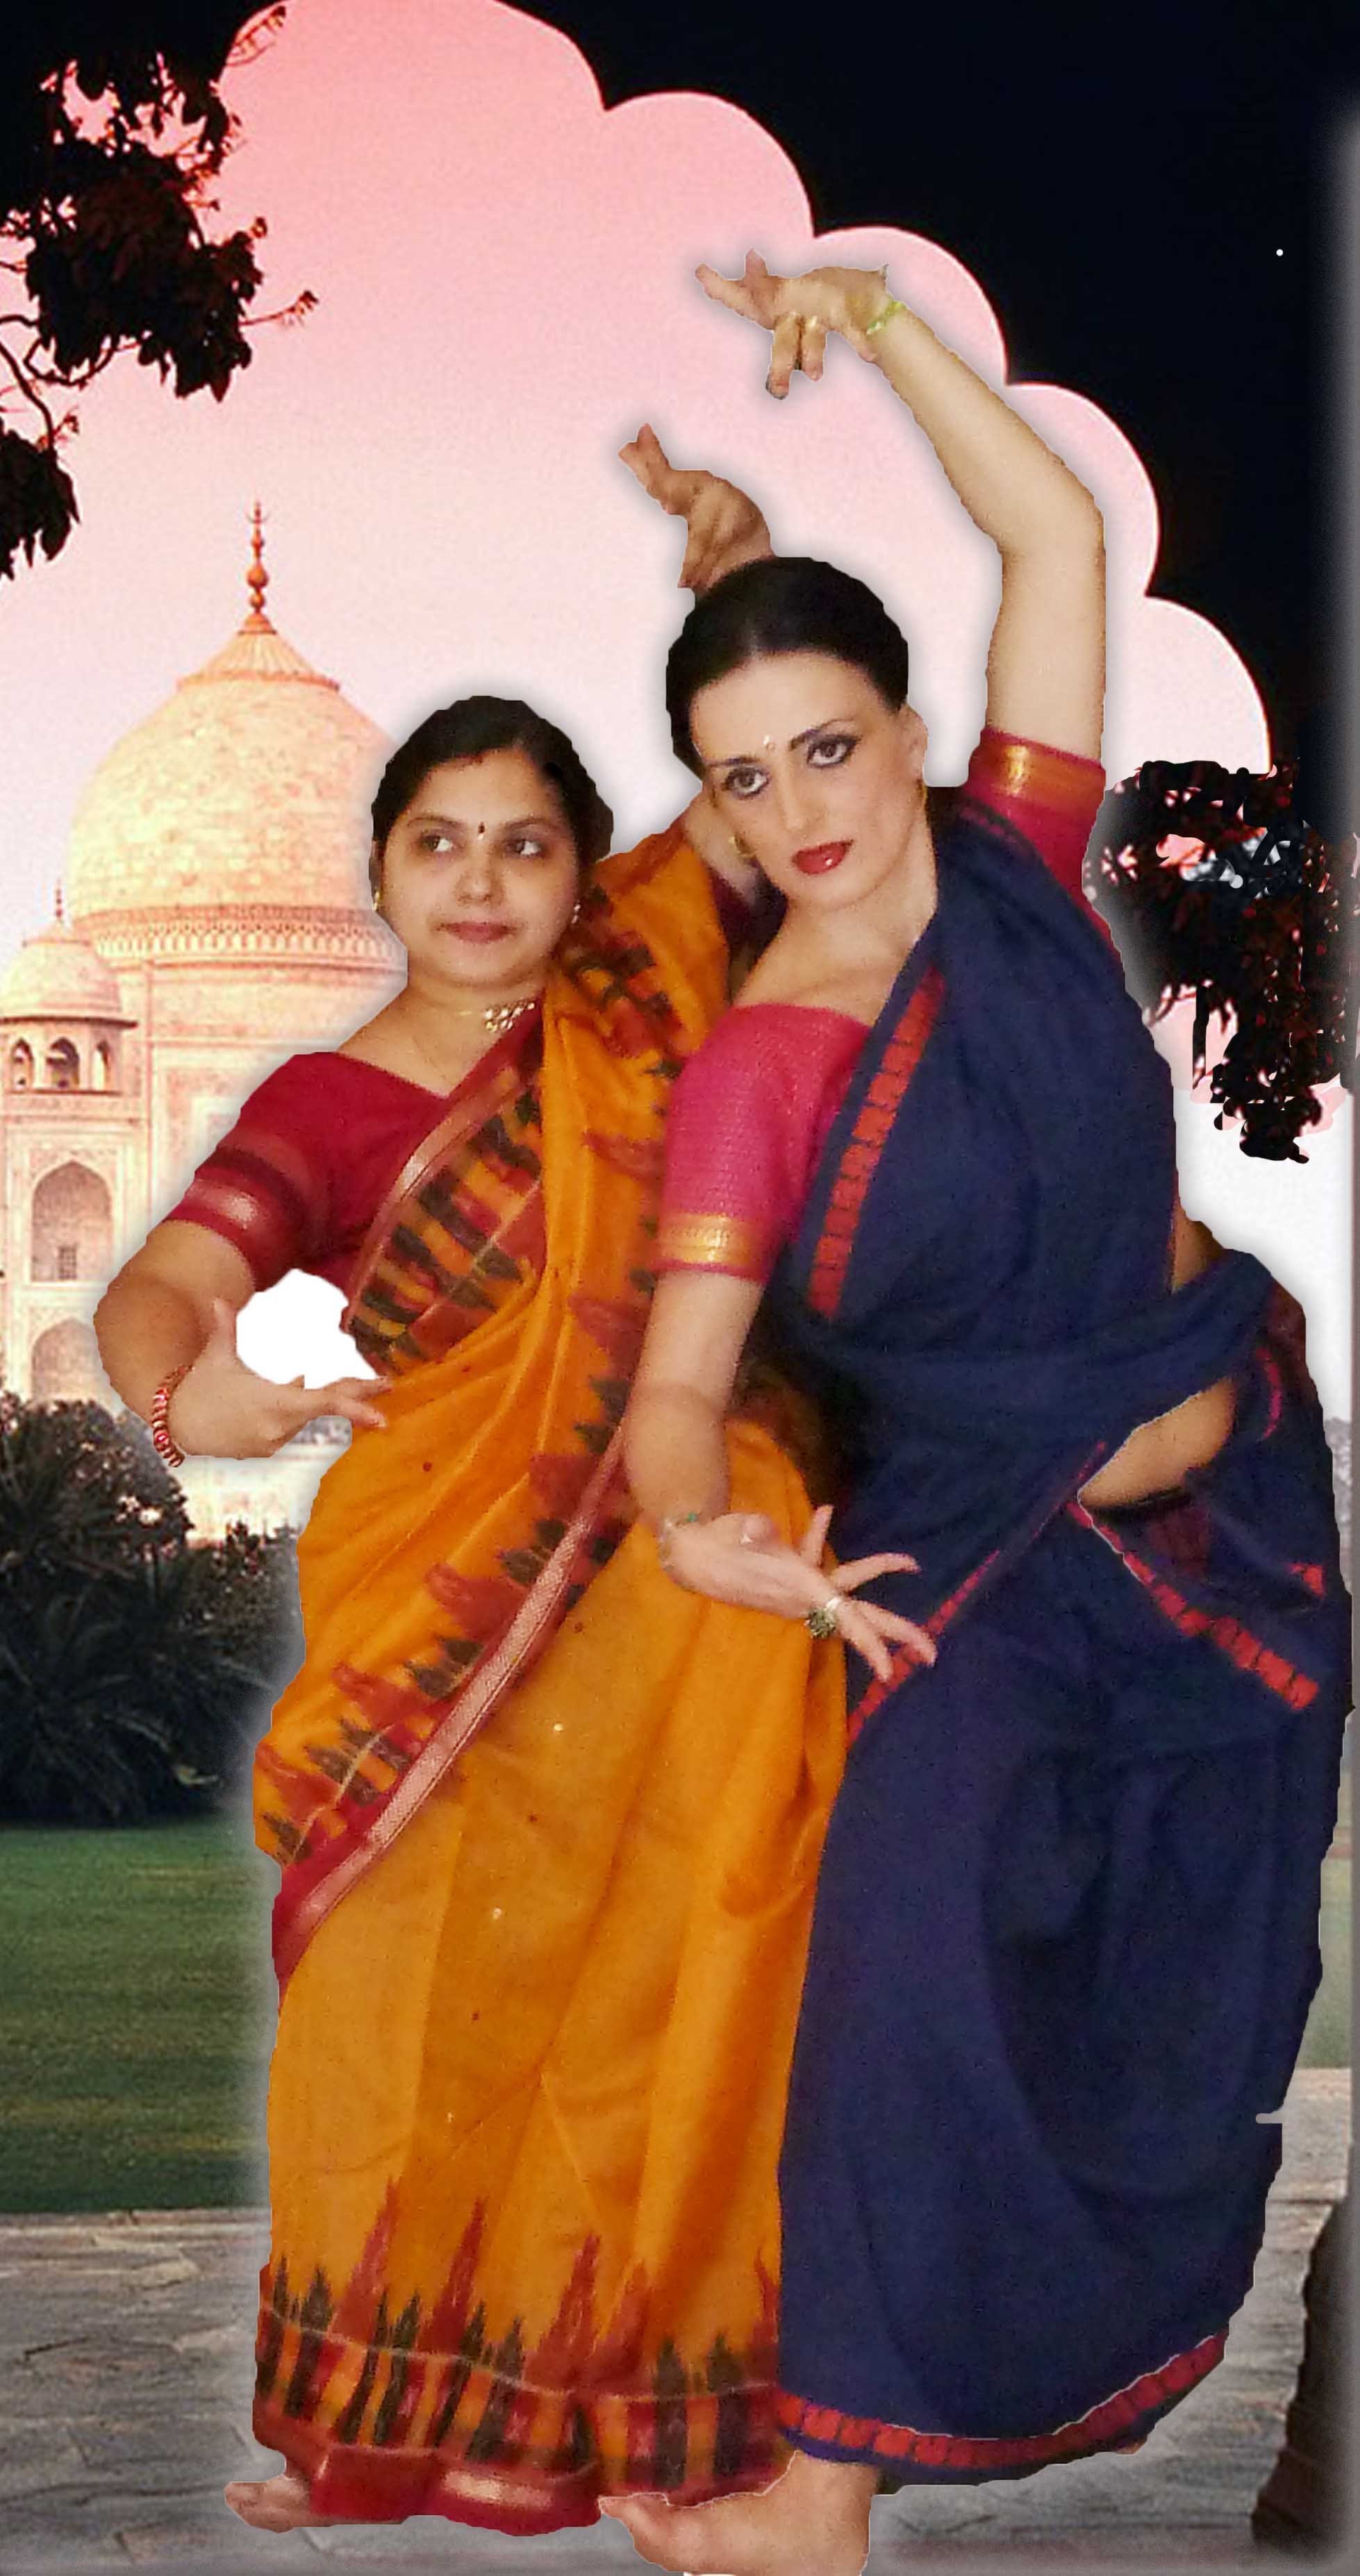 spettacolo-conferenza-di-danza-indiana-tradizionale